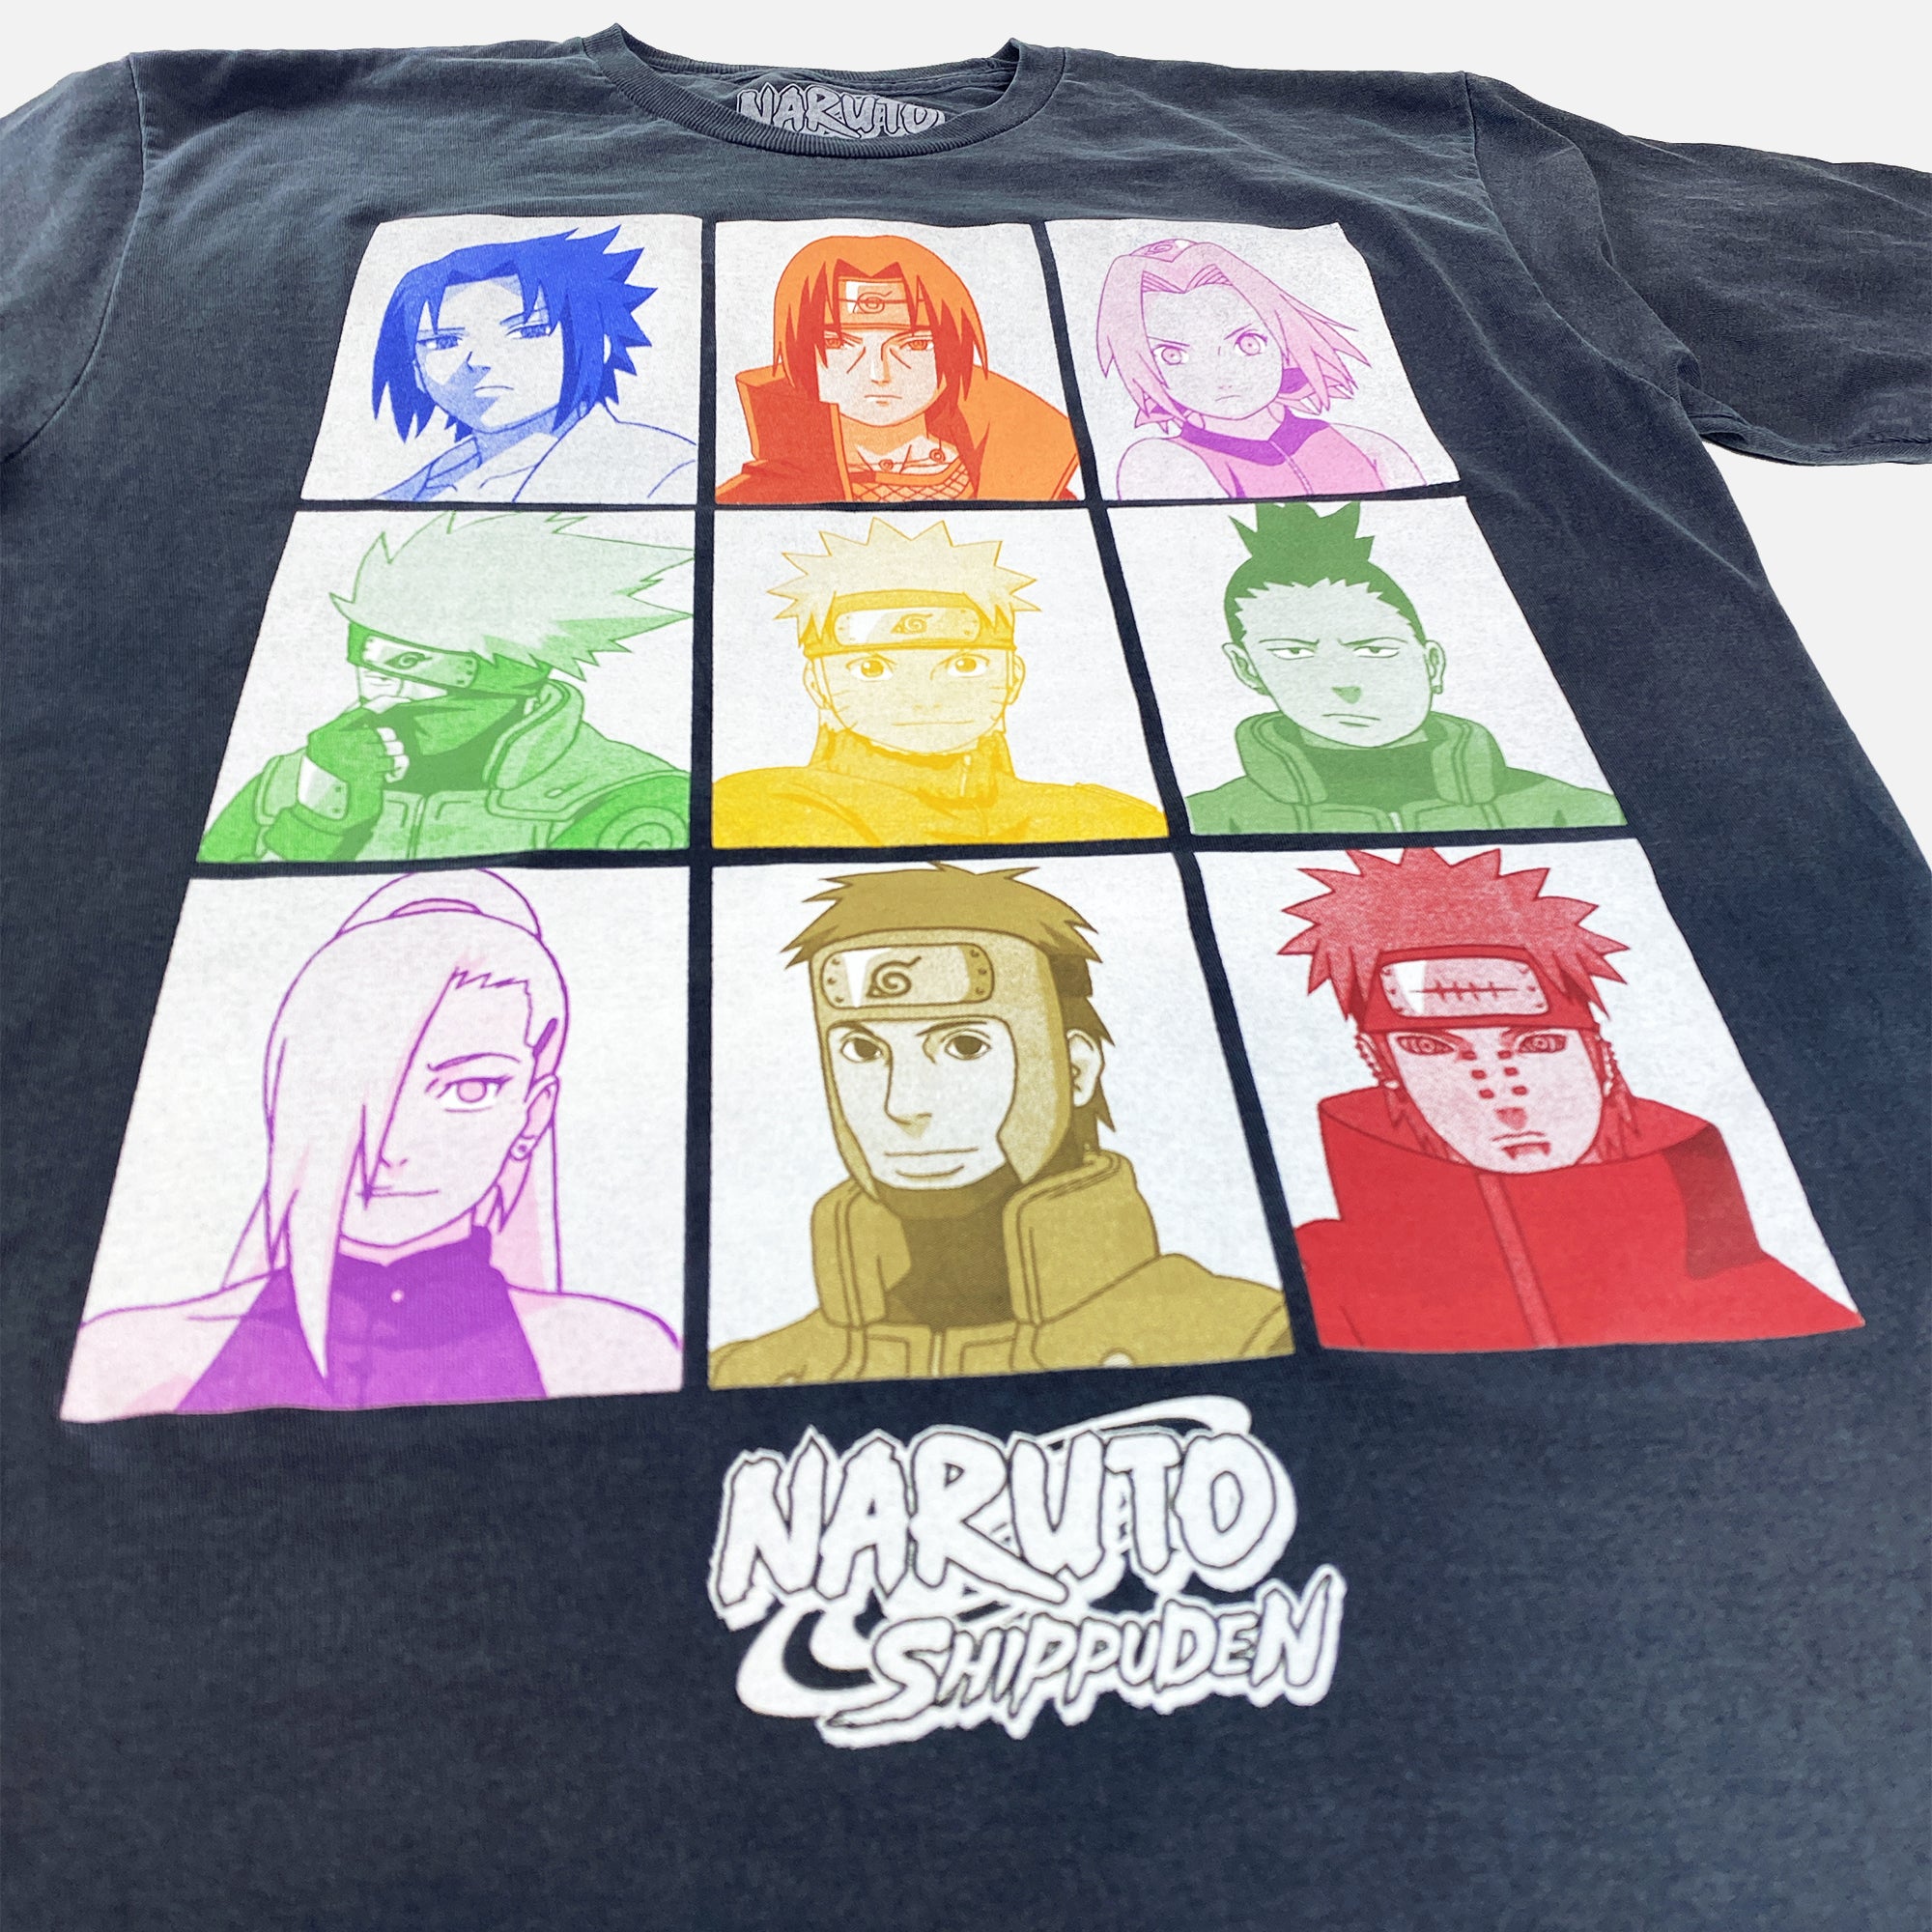 Naruto em português brasileiro - Crunchyroll